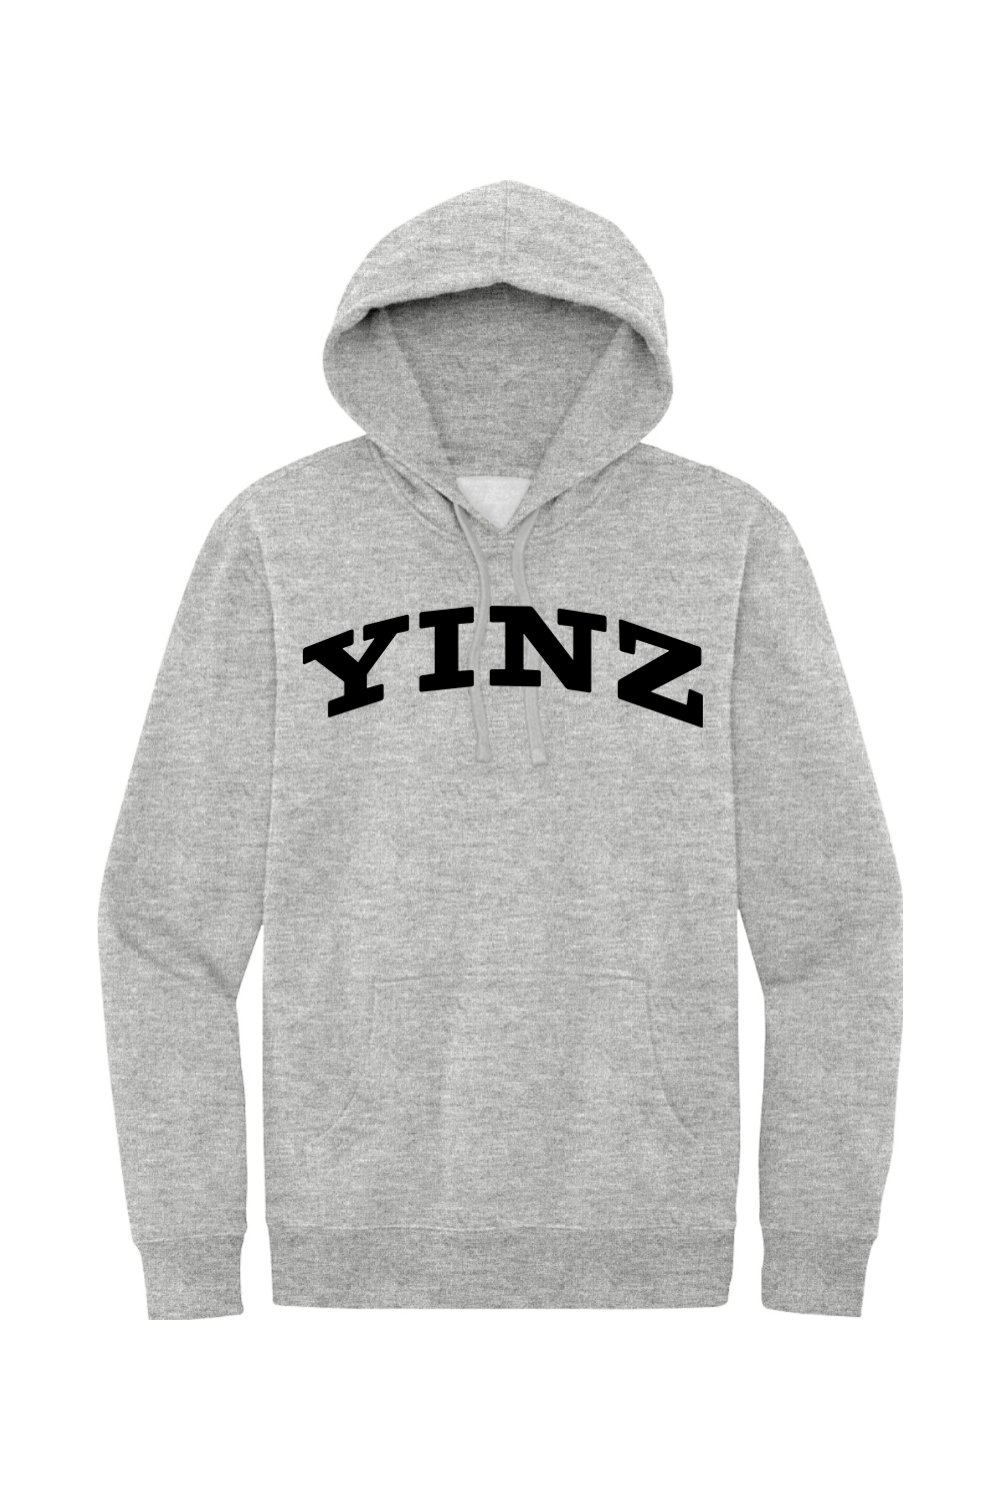 YINZ - Collegiate - Fleece Hoodie